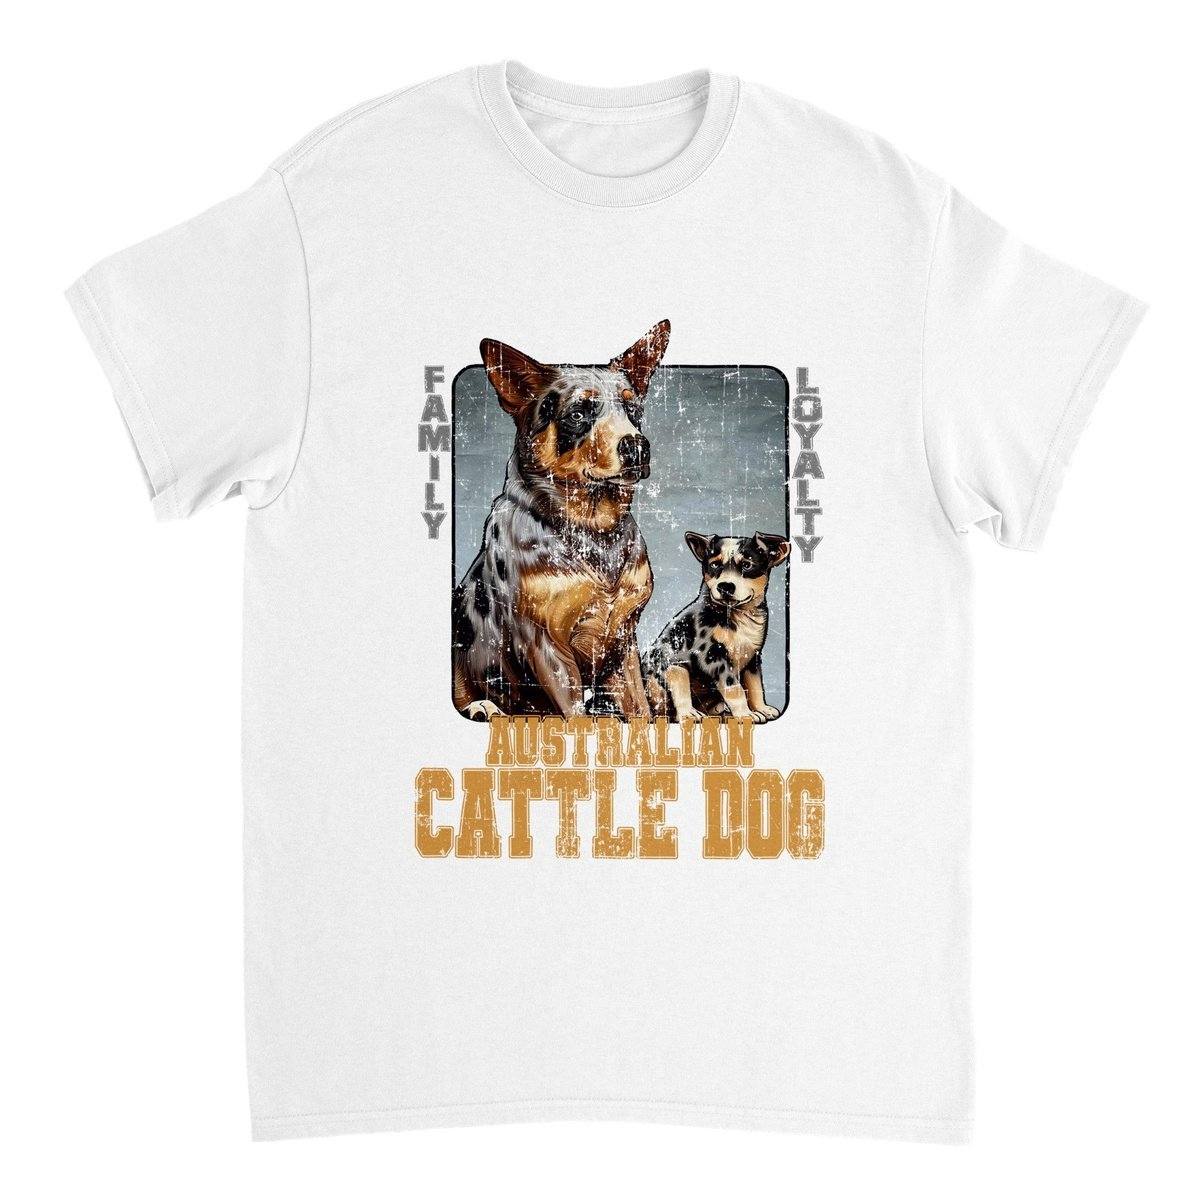 Australian Cattle Dog T-SHIRT Adults T-Shirts Unisex White / S BC Australia